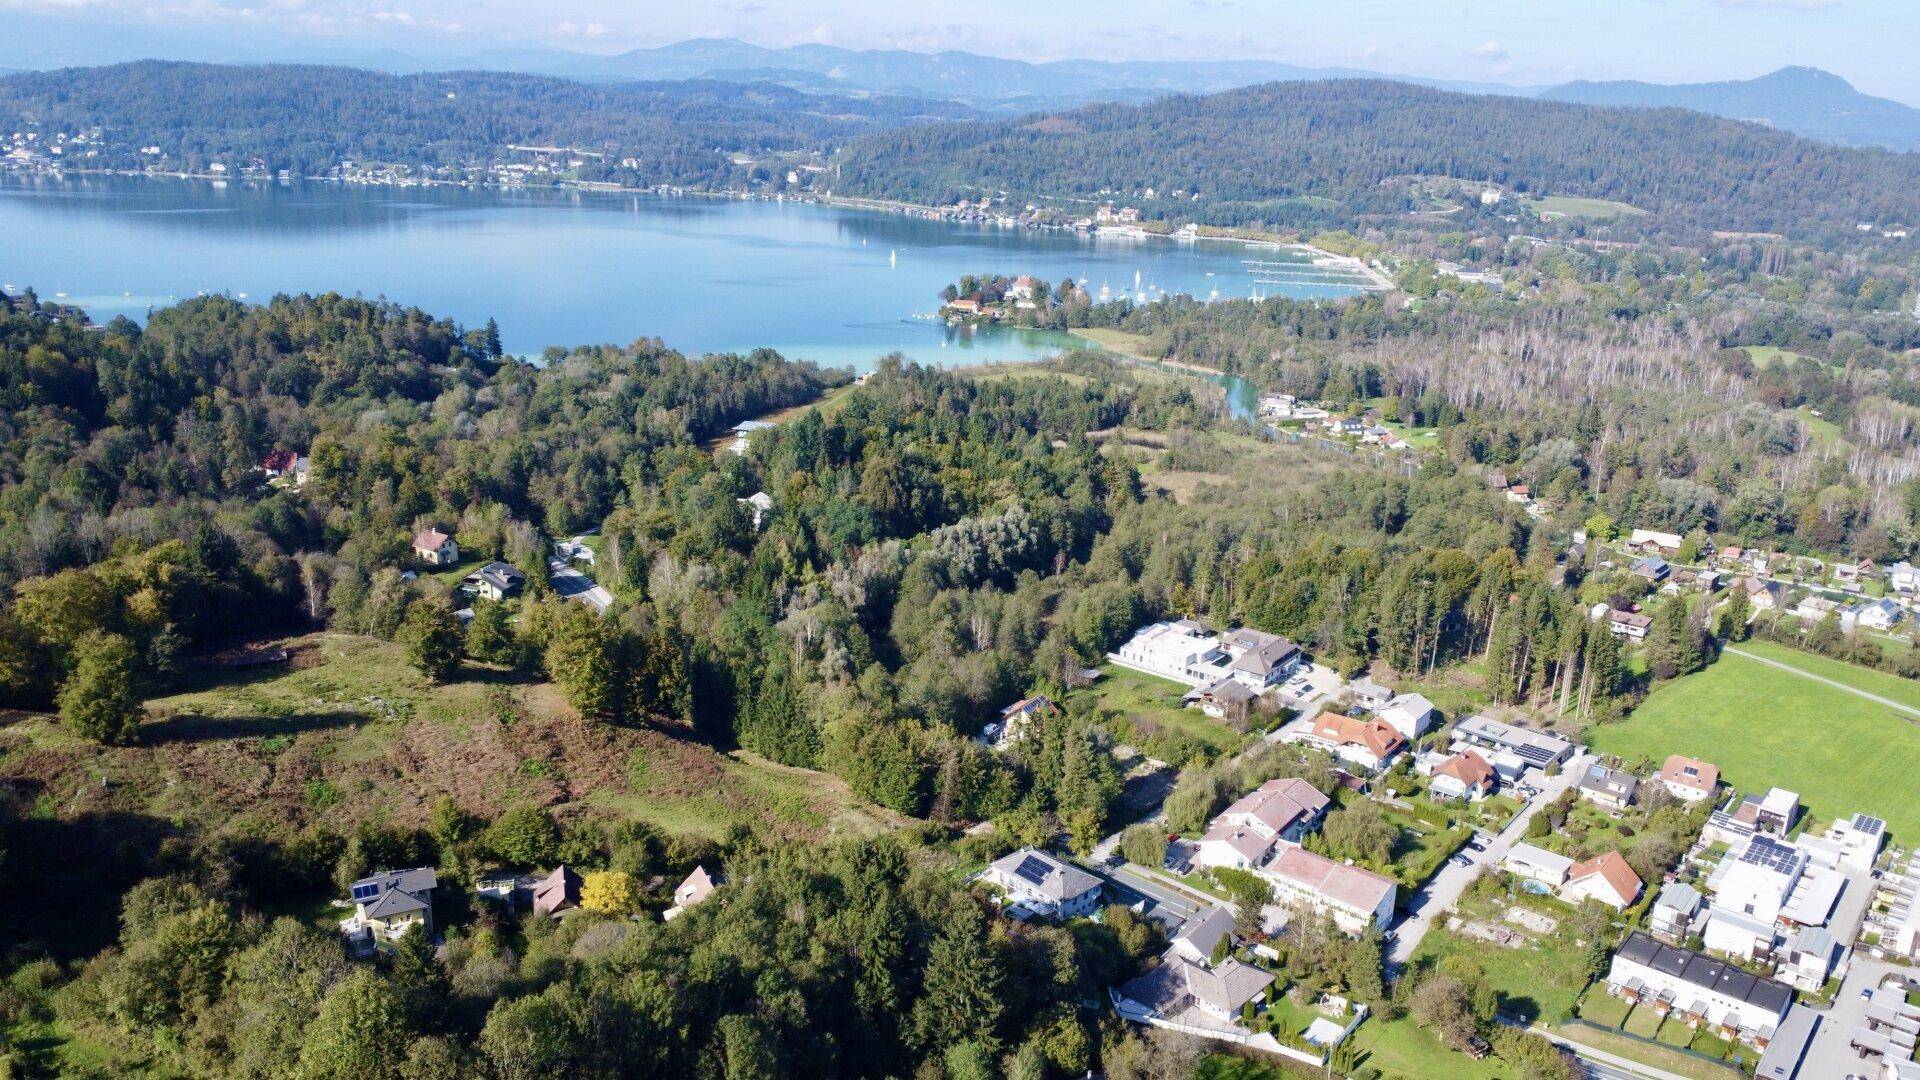 Luftbild vom Grundstück in Richtung Wörthersee